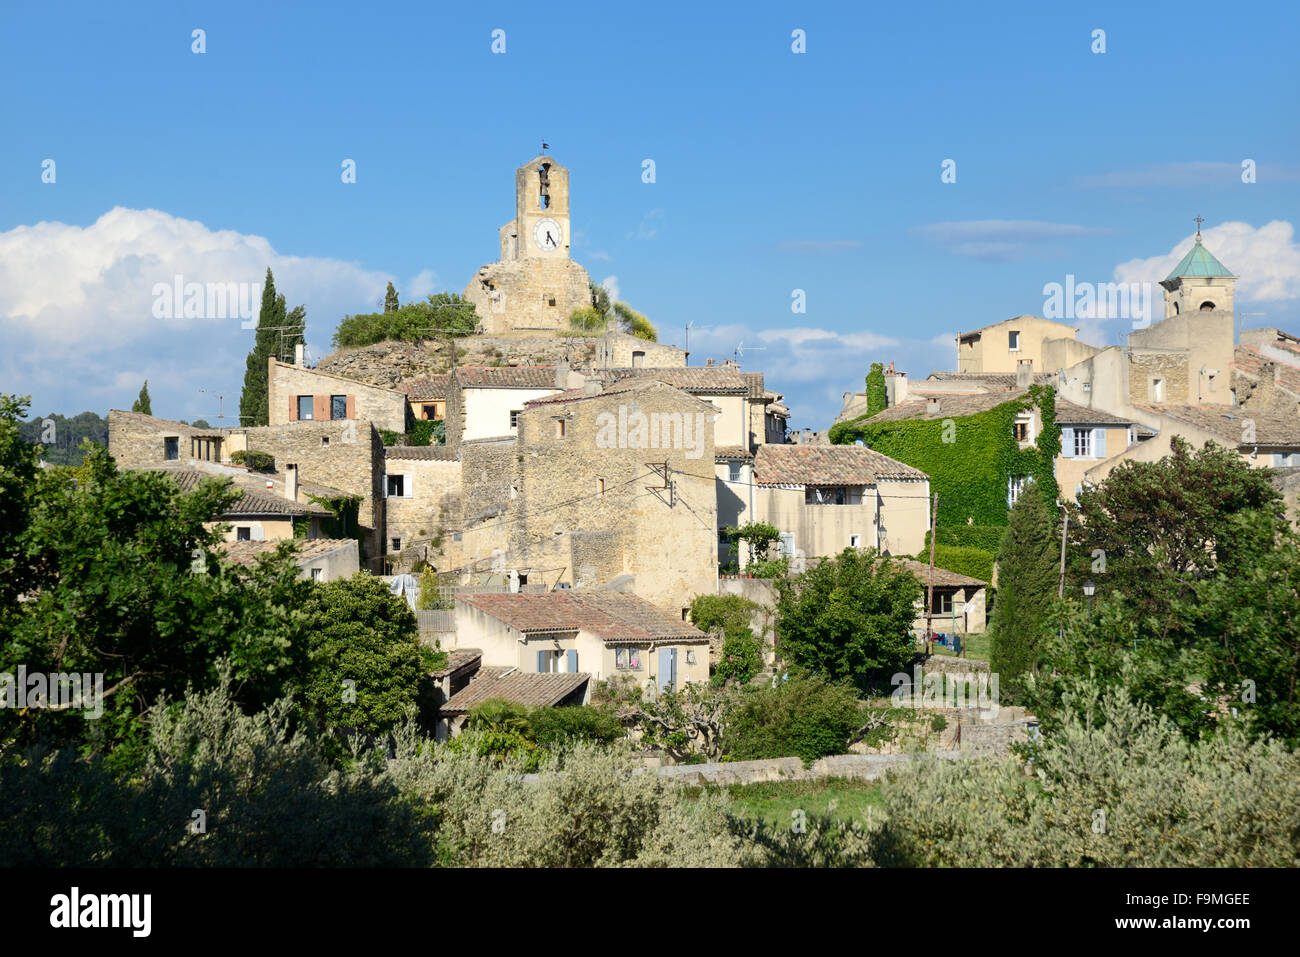 Die provenzalischen Dorf Lourmarin in den Regionalpark Luberon Vaucluse Provence Frankreich Stockfoto